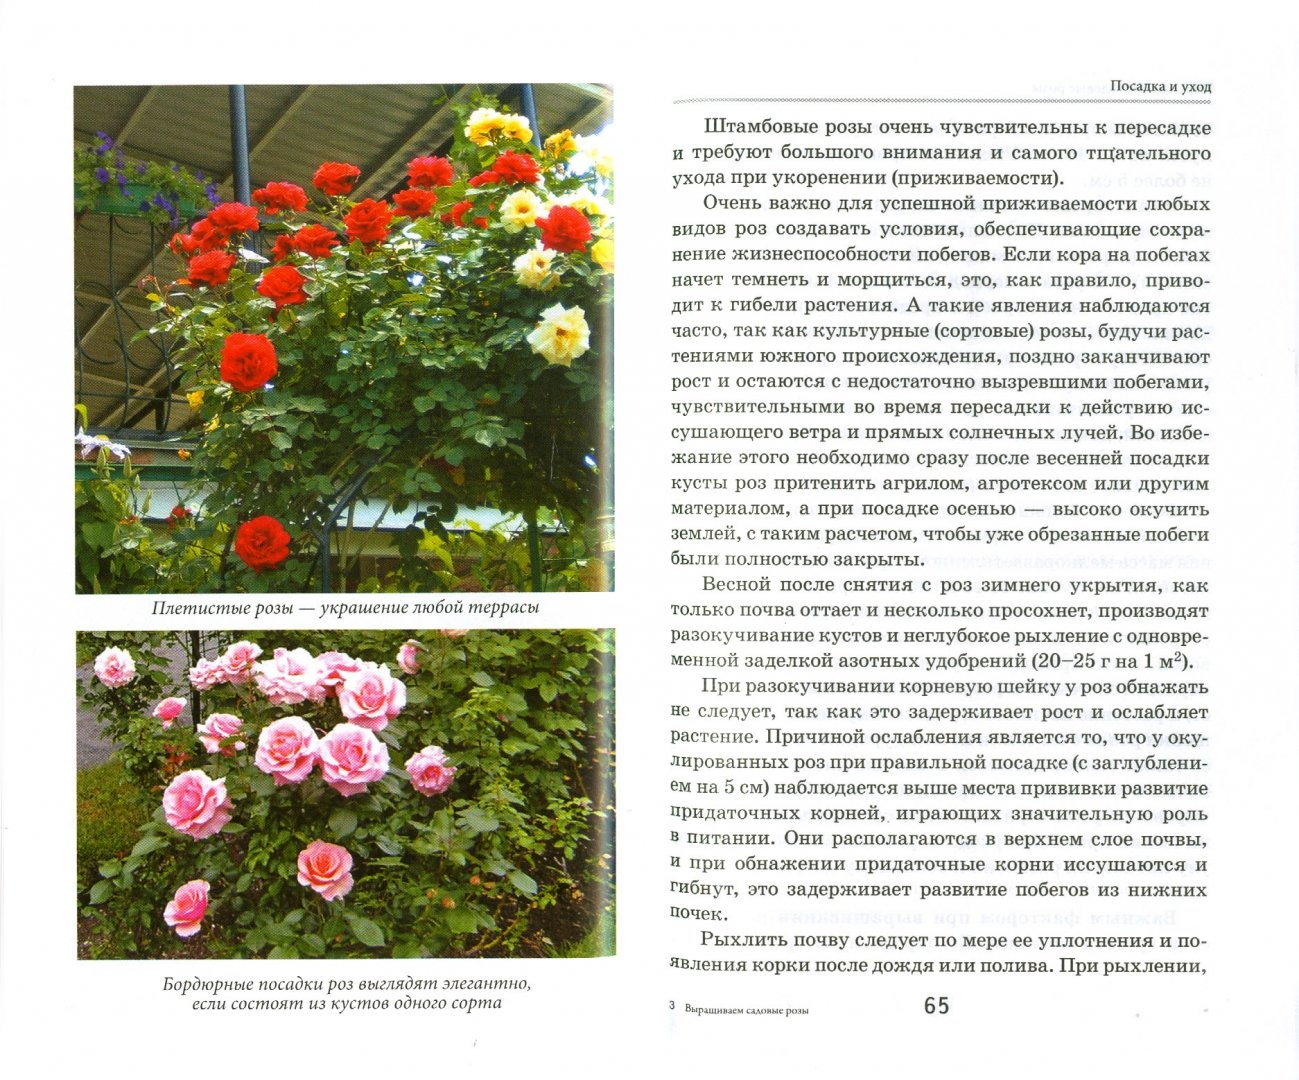 Роза сантана (santana): описание сорта, фото, отзывы, посадка и уход